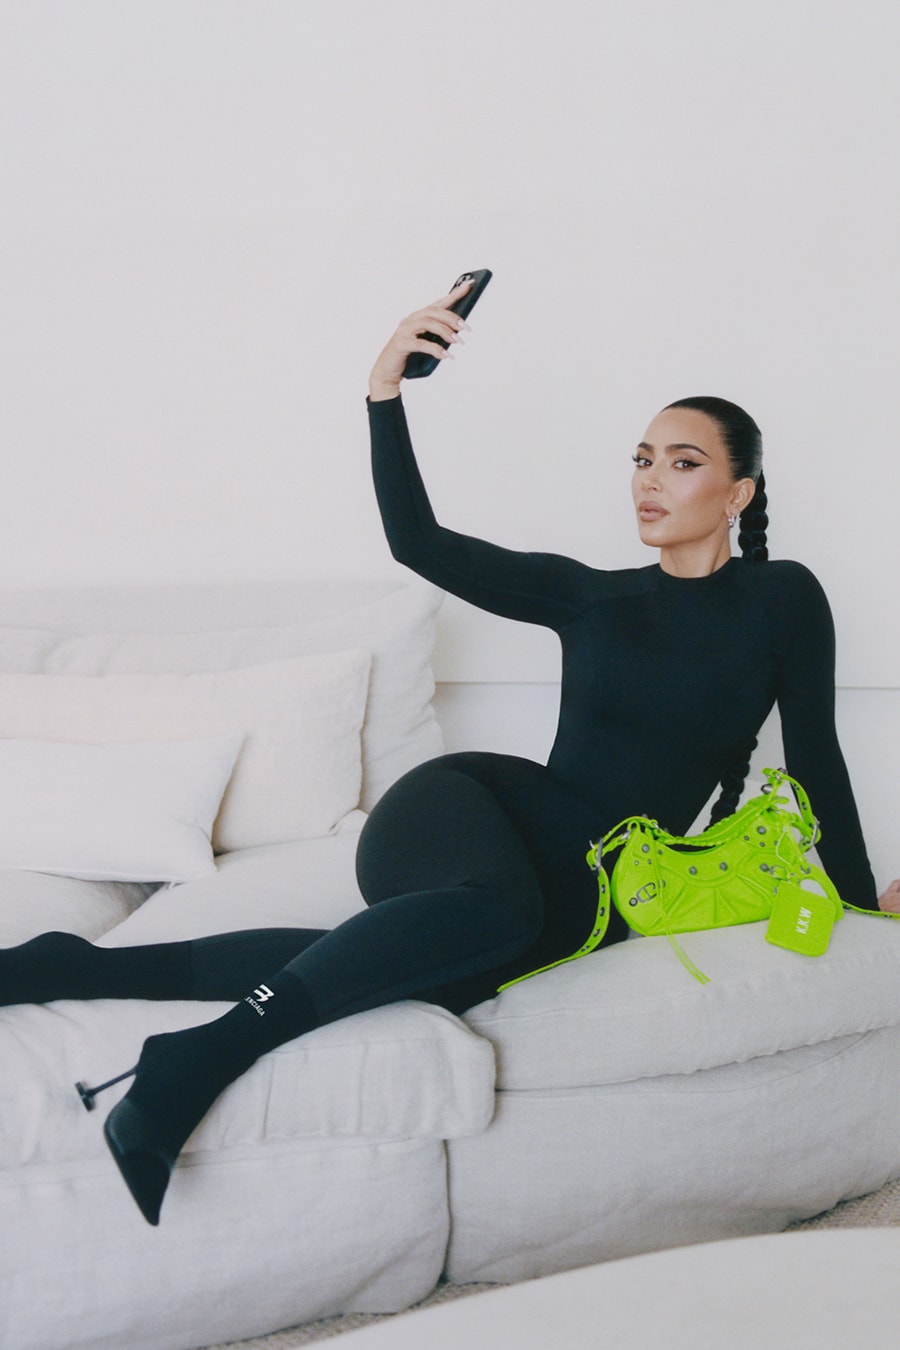 Kim Kardashian Is the Face of Demna's Balenciaga